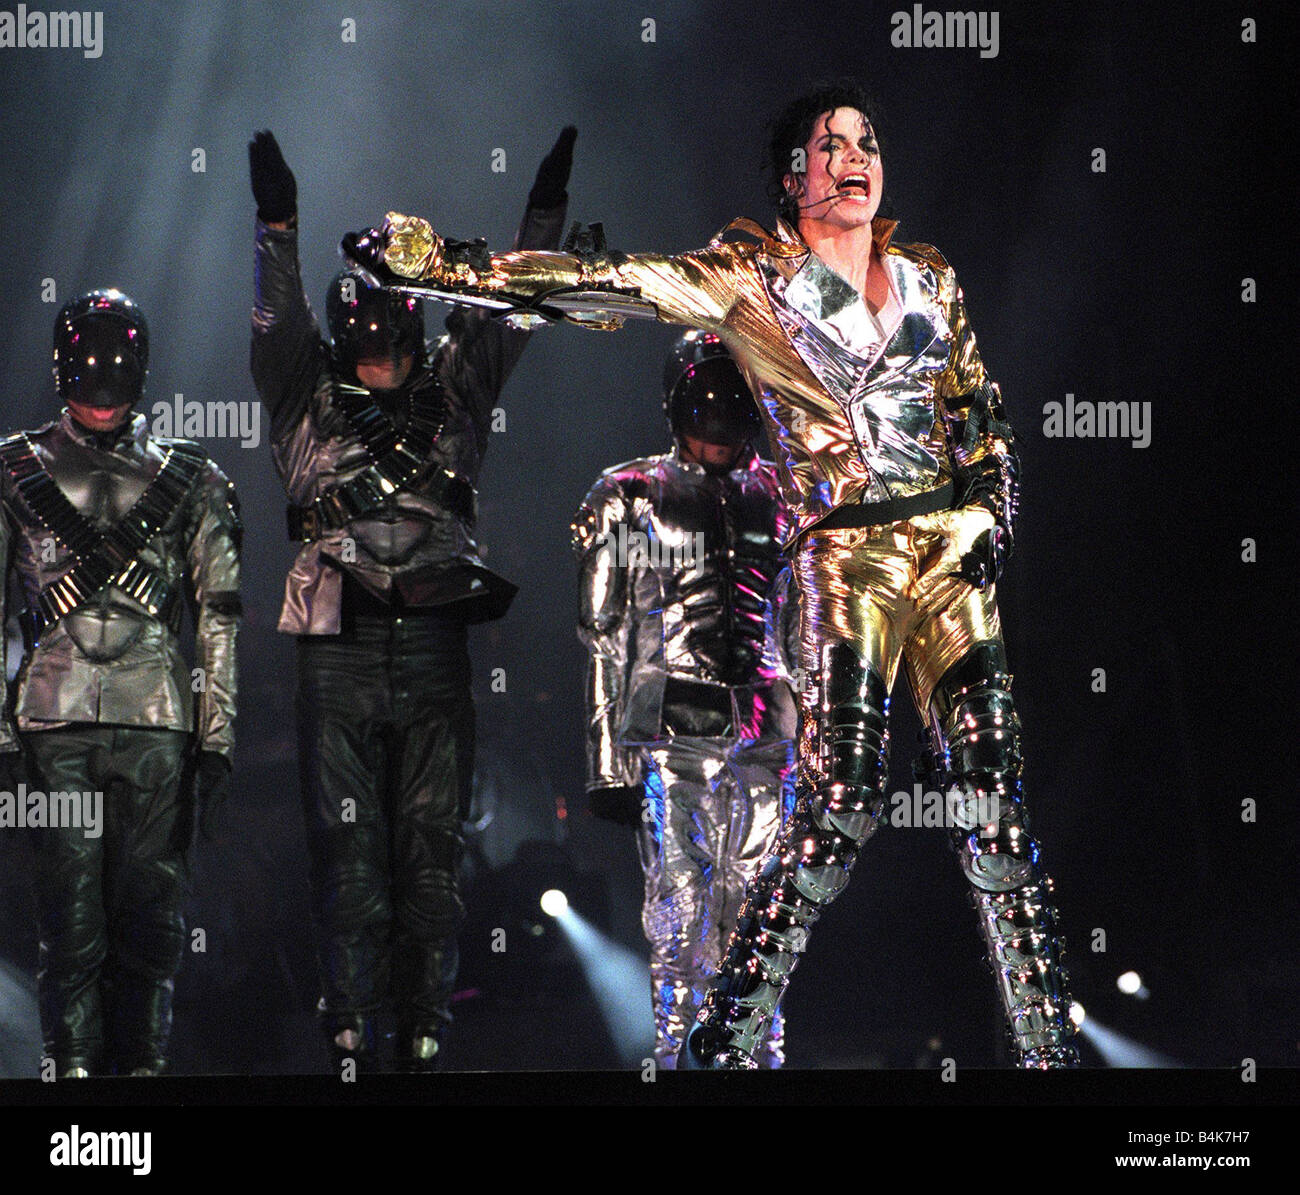 U S pop-Megastar Michael Jackson singt während eines Konzerts in Letna Plain im Zentrum der tschechischen Hauptstadt Prag, die Eröffnung seiner HIStory World Tour Samstag Stockfoto